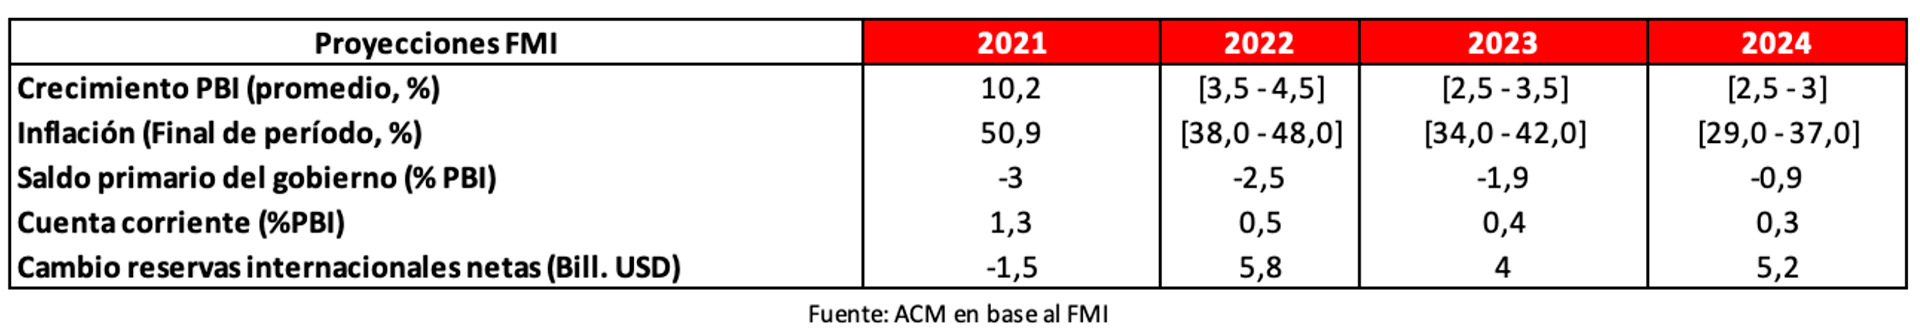 Proyecciones con el FMI (Fuente: ACM en base a cifras oficiales)